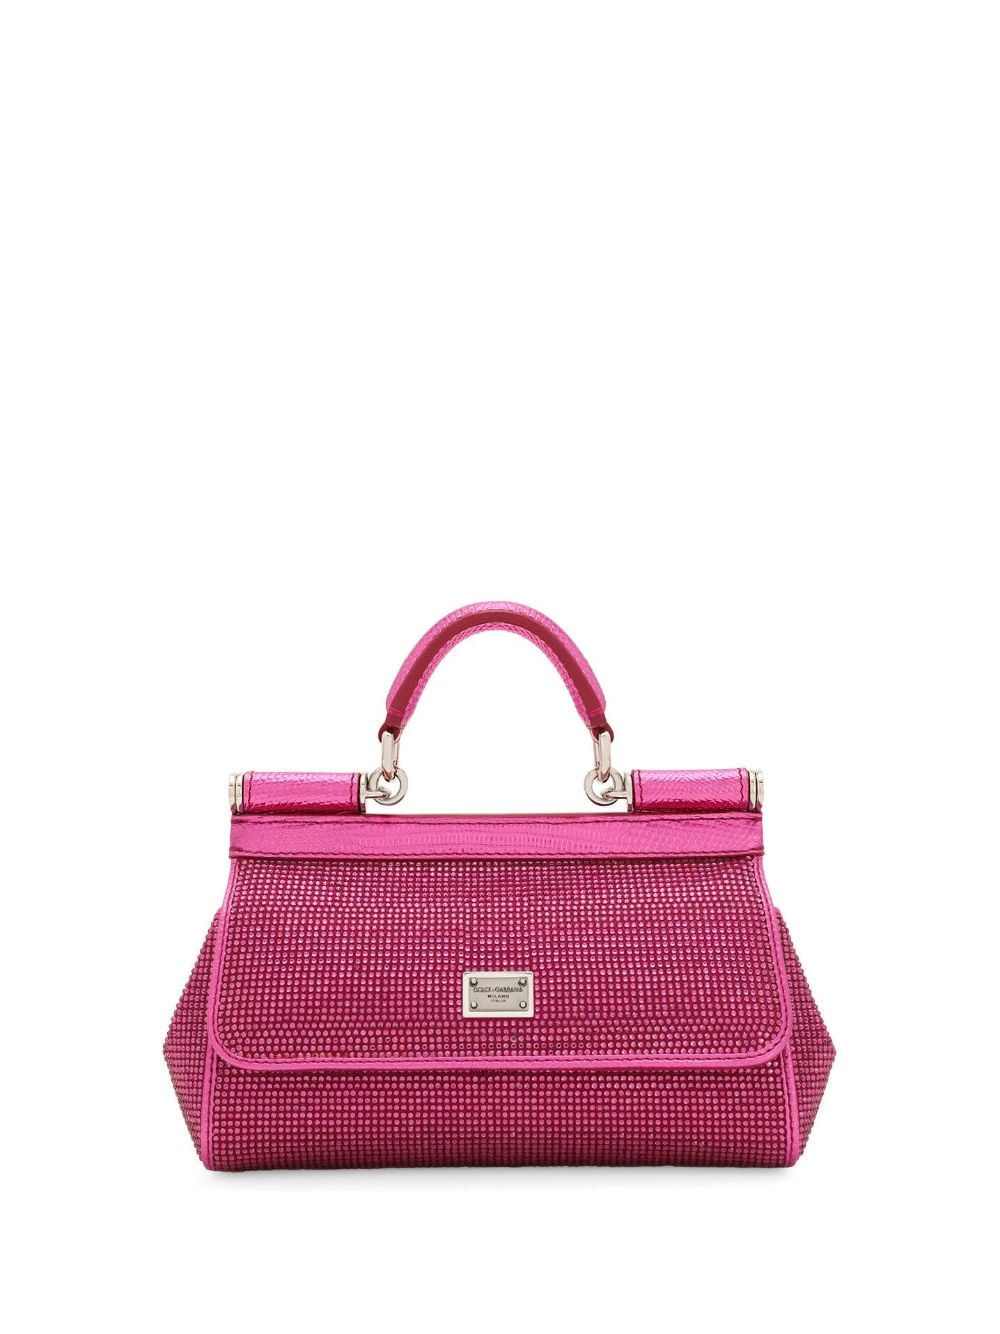 可愛らしいピンク色のラインストーンハンドバッグ